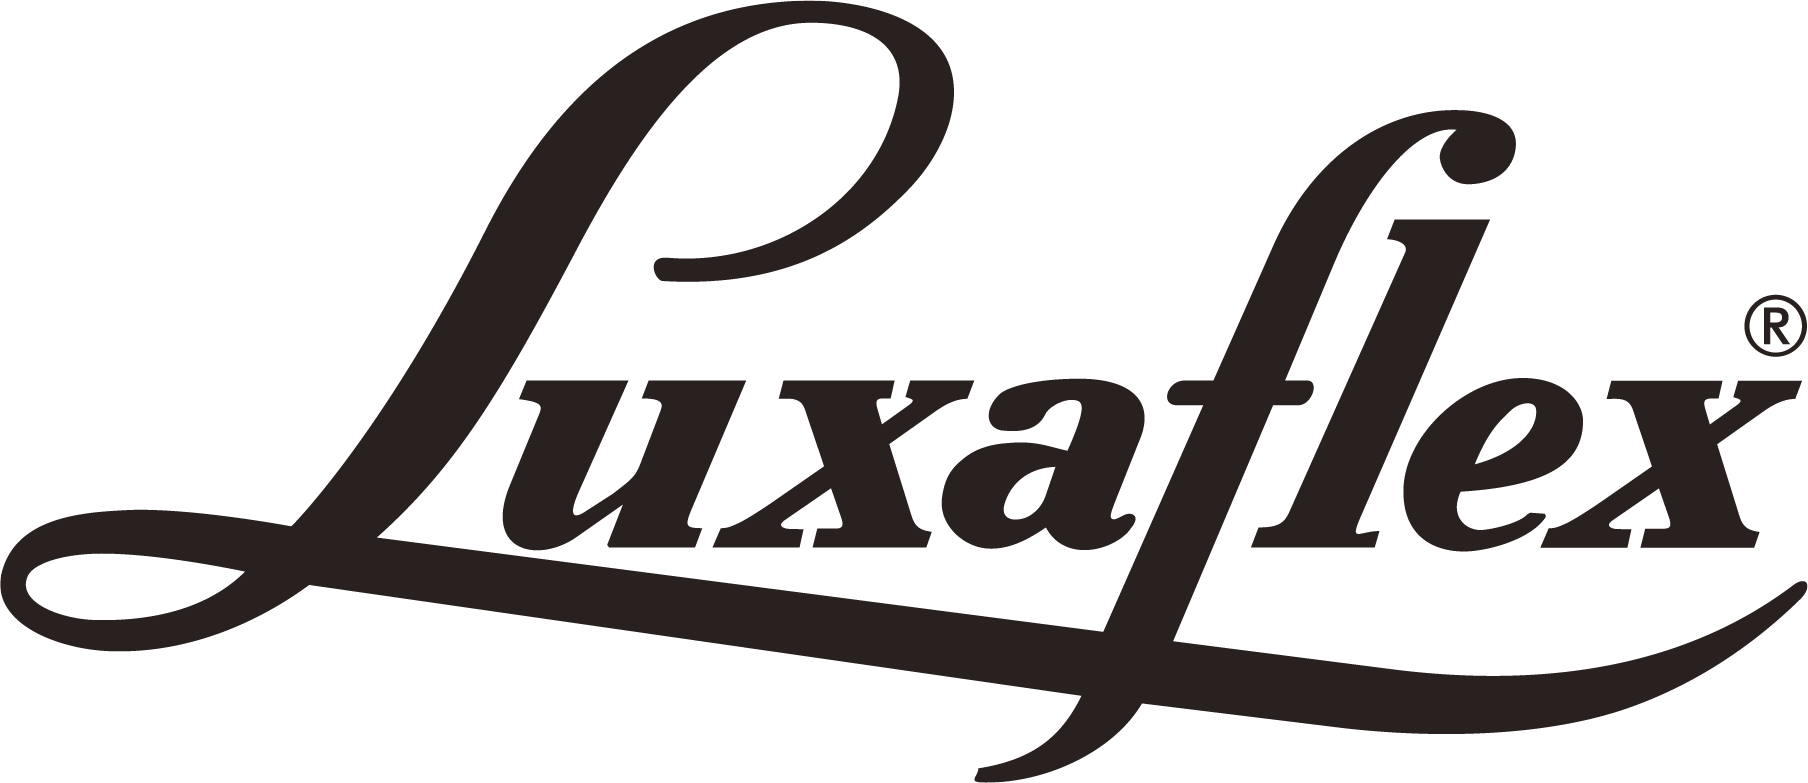 NZW_Luxaflex_logo_Black